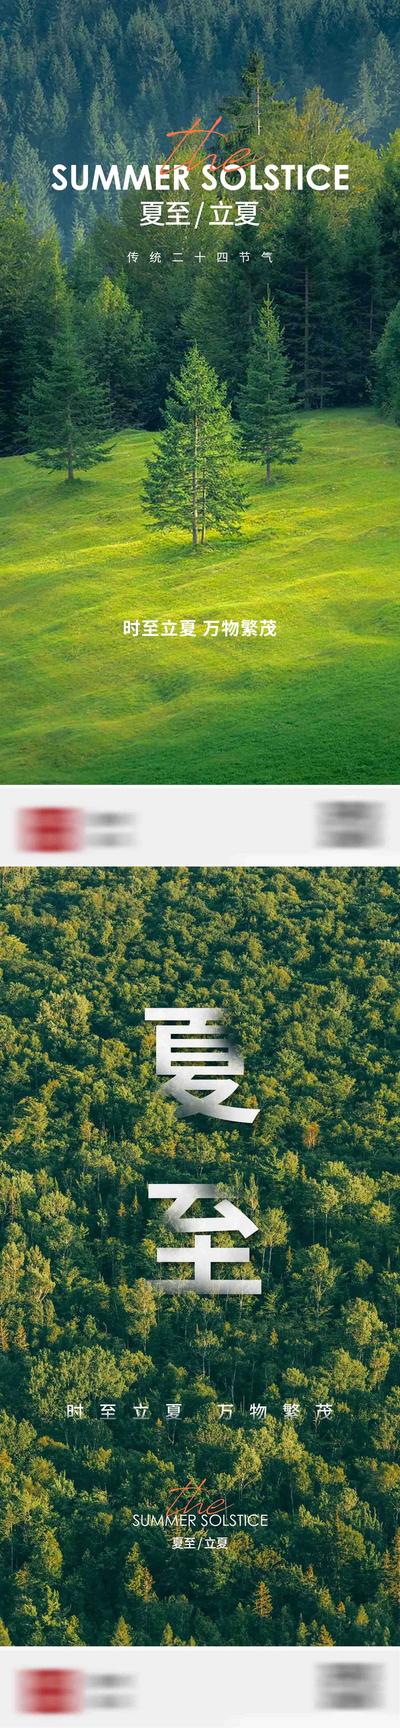 南门网 海报 二十四节气 立夏 夏至 简约 森林 系列